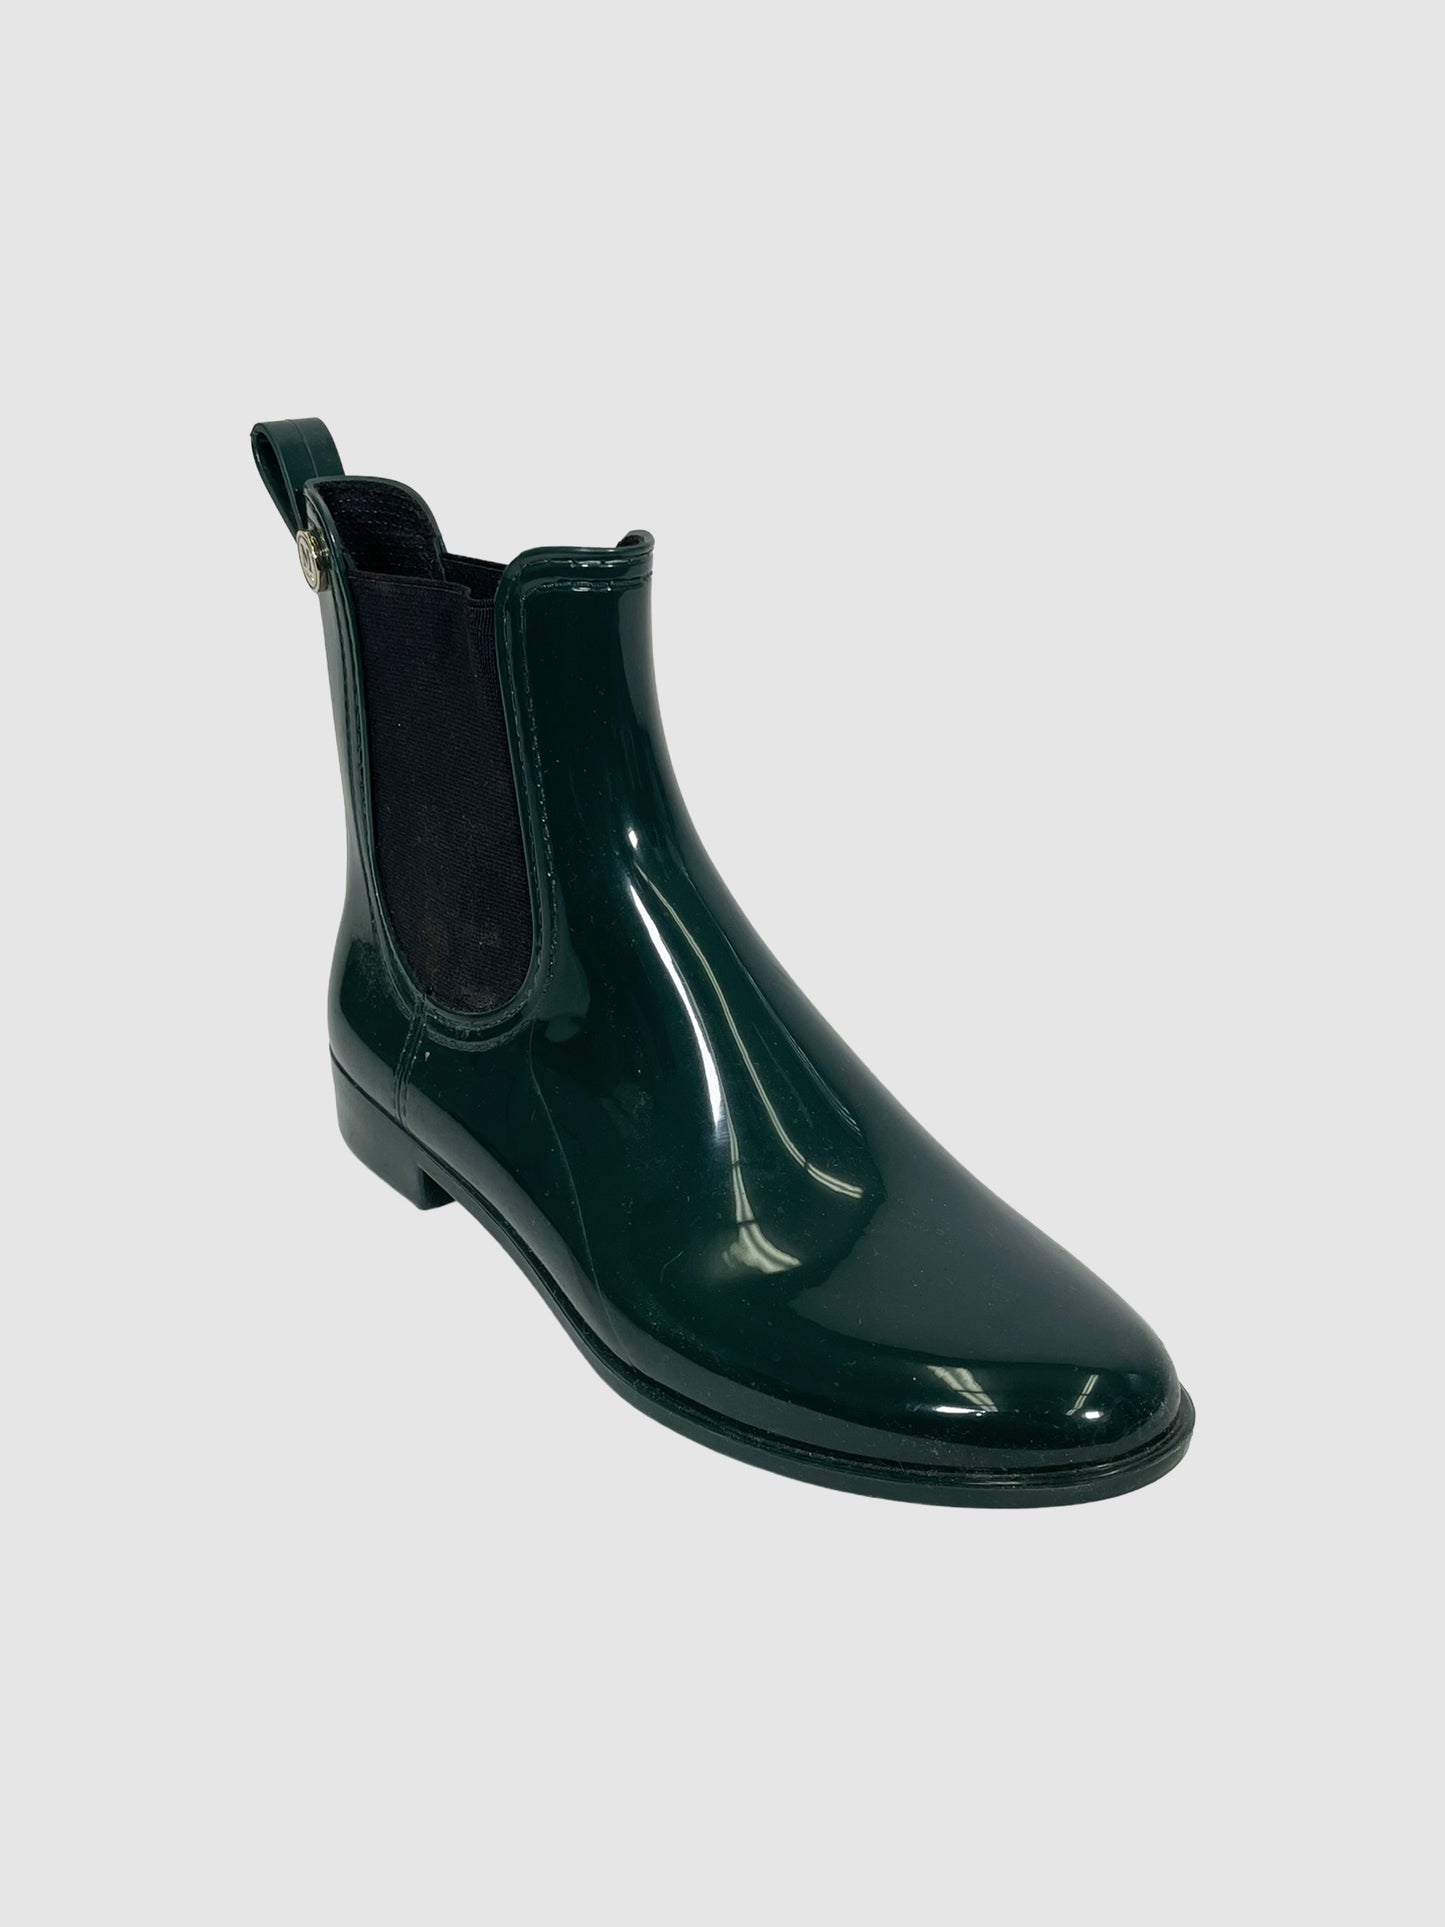 Missoni Green Rain Boots - Size 39